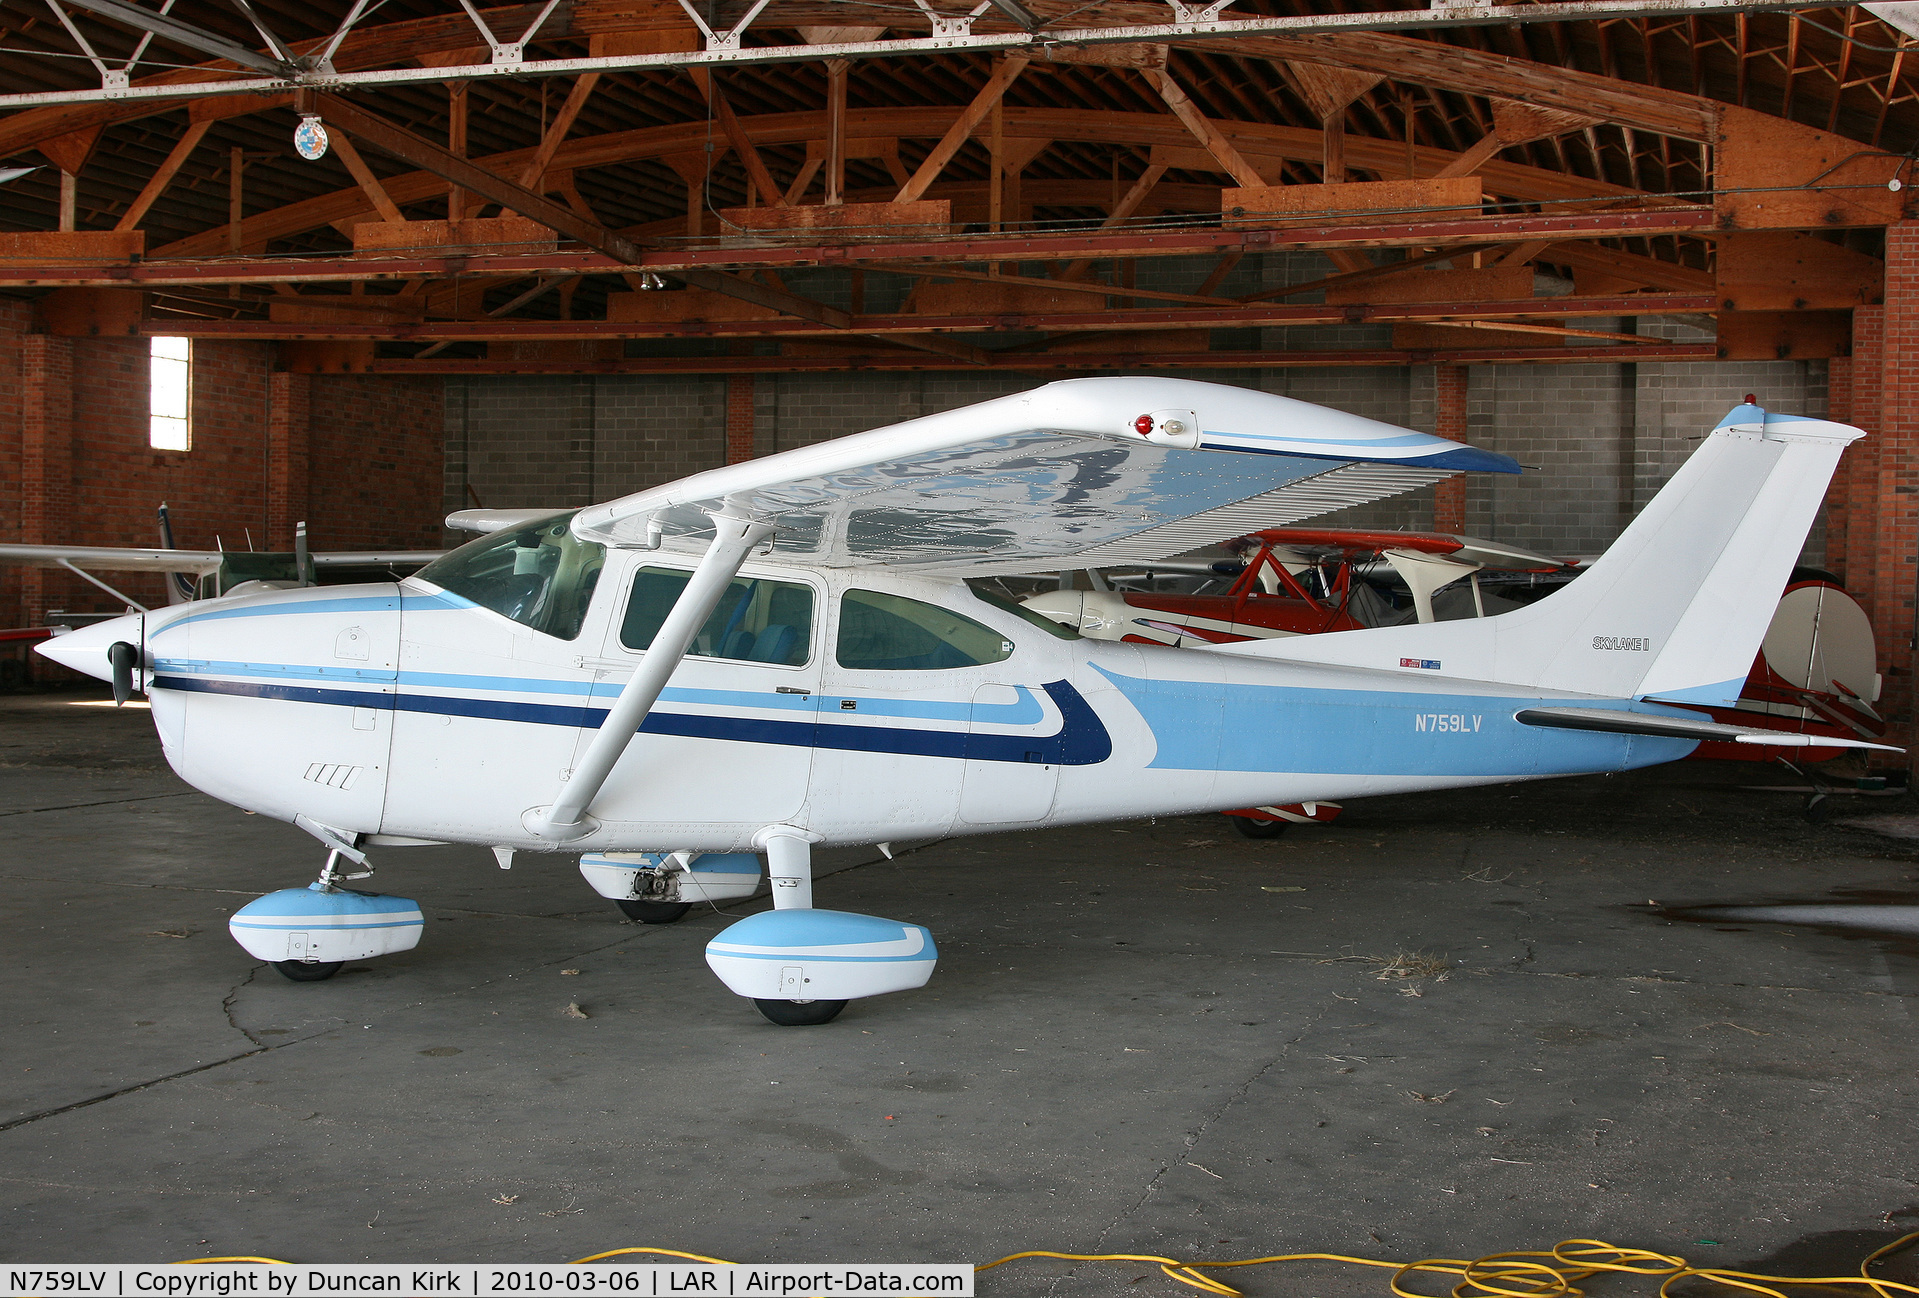 N759LV, 1978 Cessna 182Q Skylane C/N 18266087, Hangared at Laramie